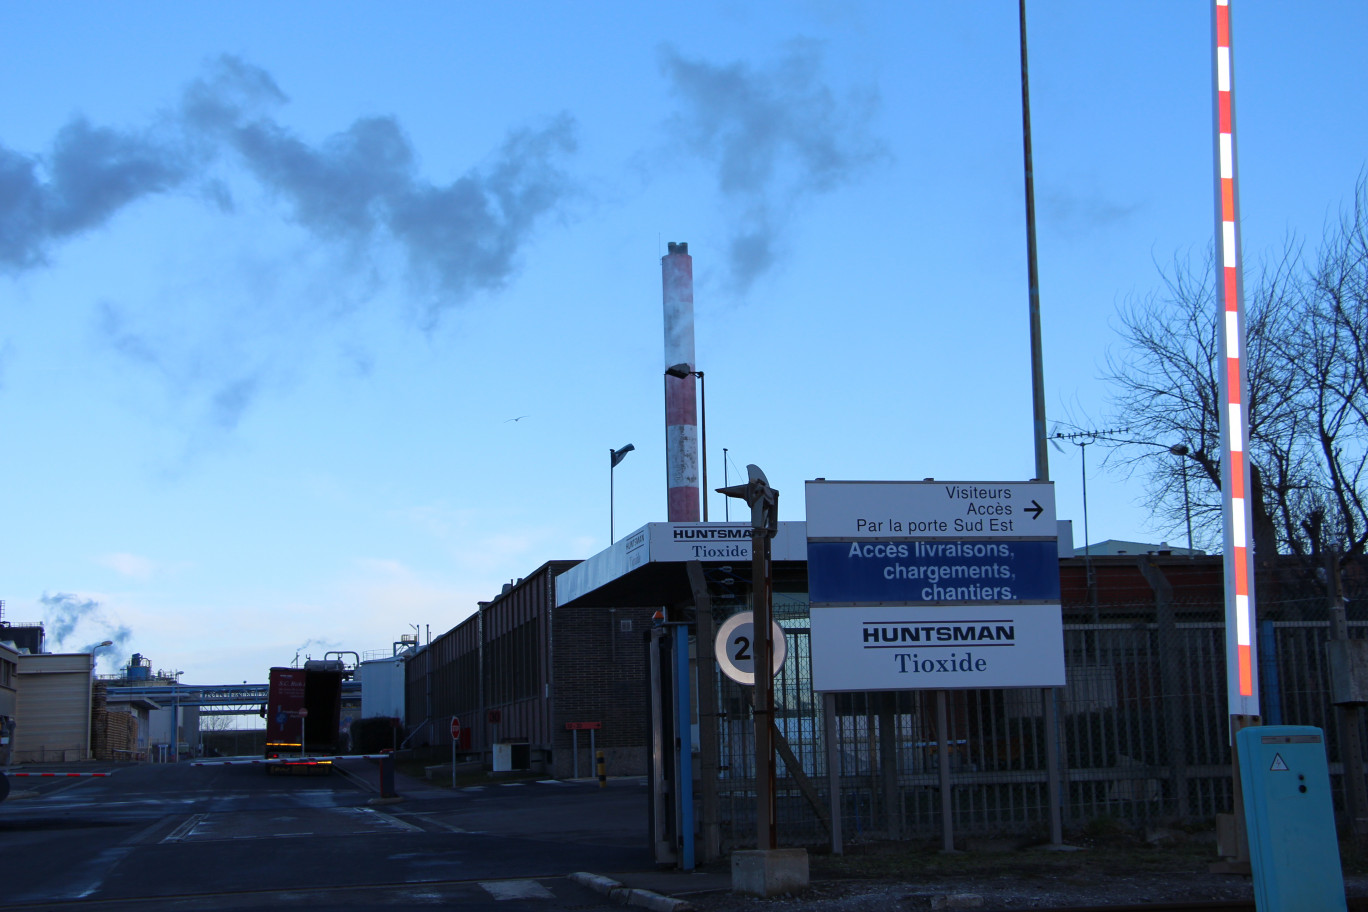 « Le site du géant américain de la chimie Huntsmann-Tioxide à Calais emploie 320 personnes ».